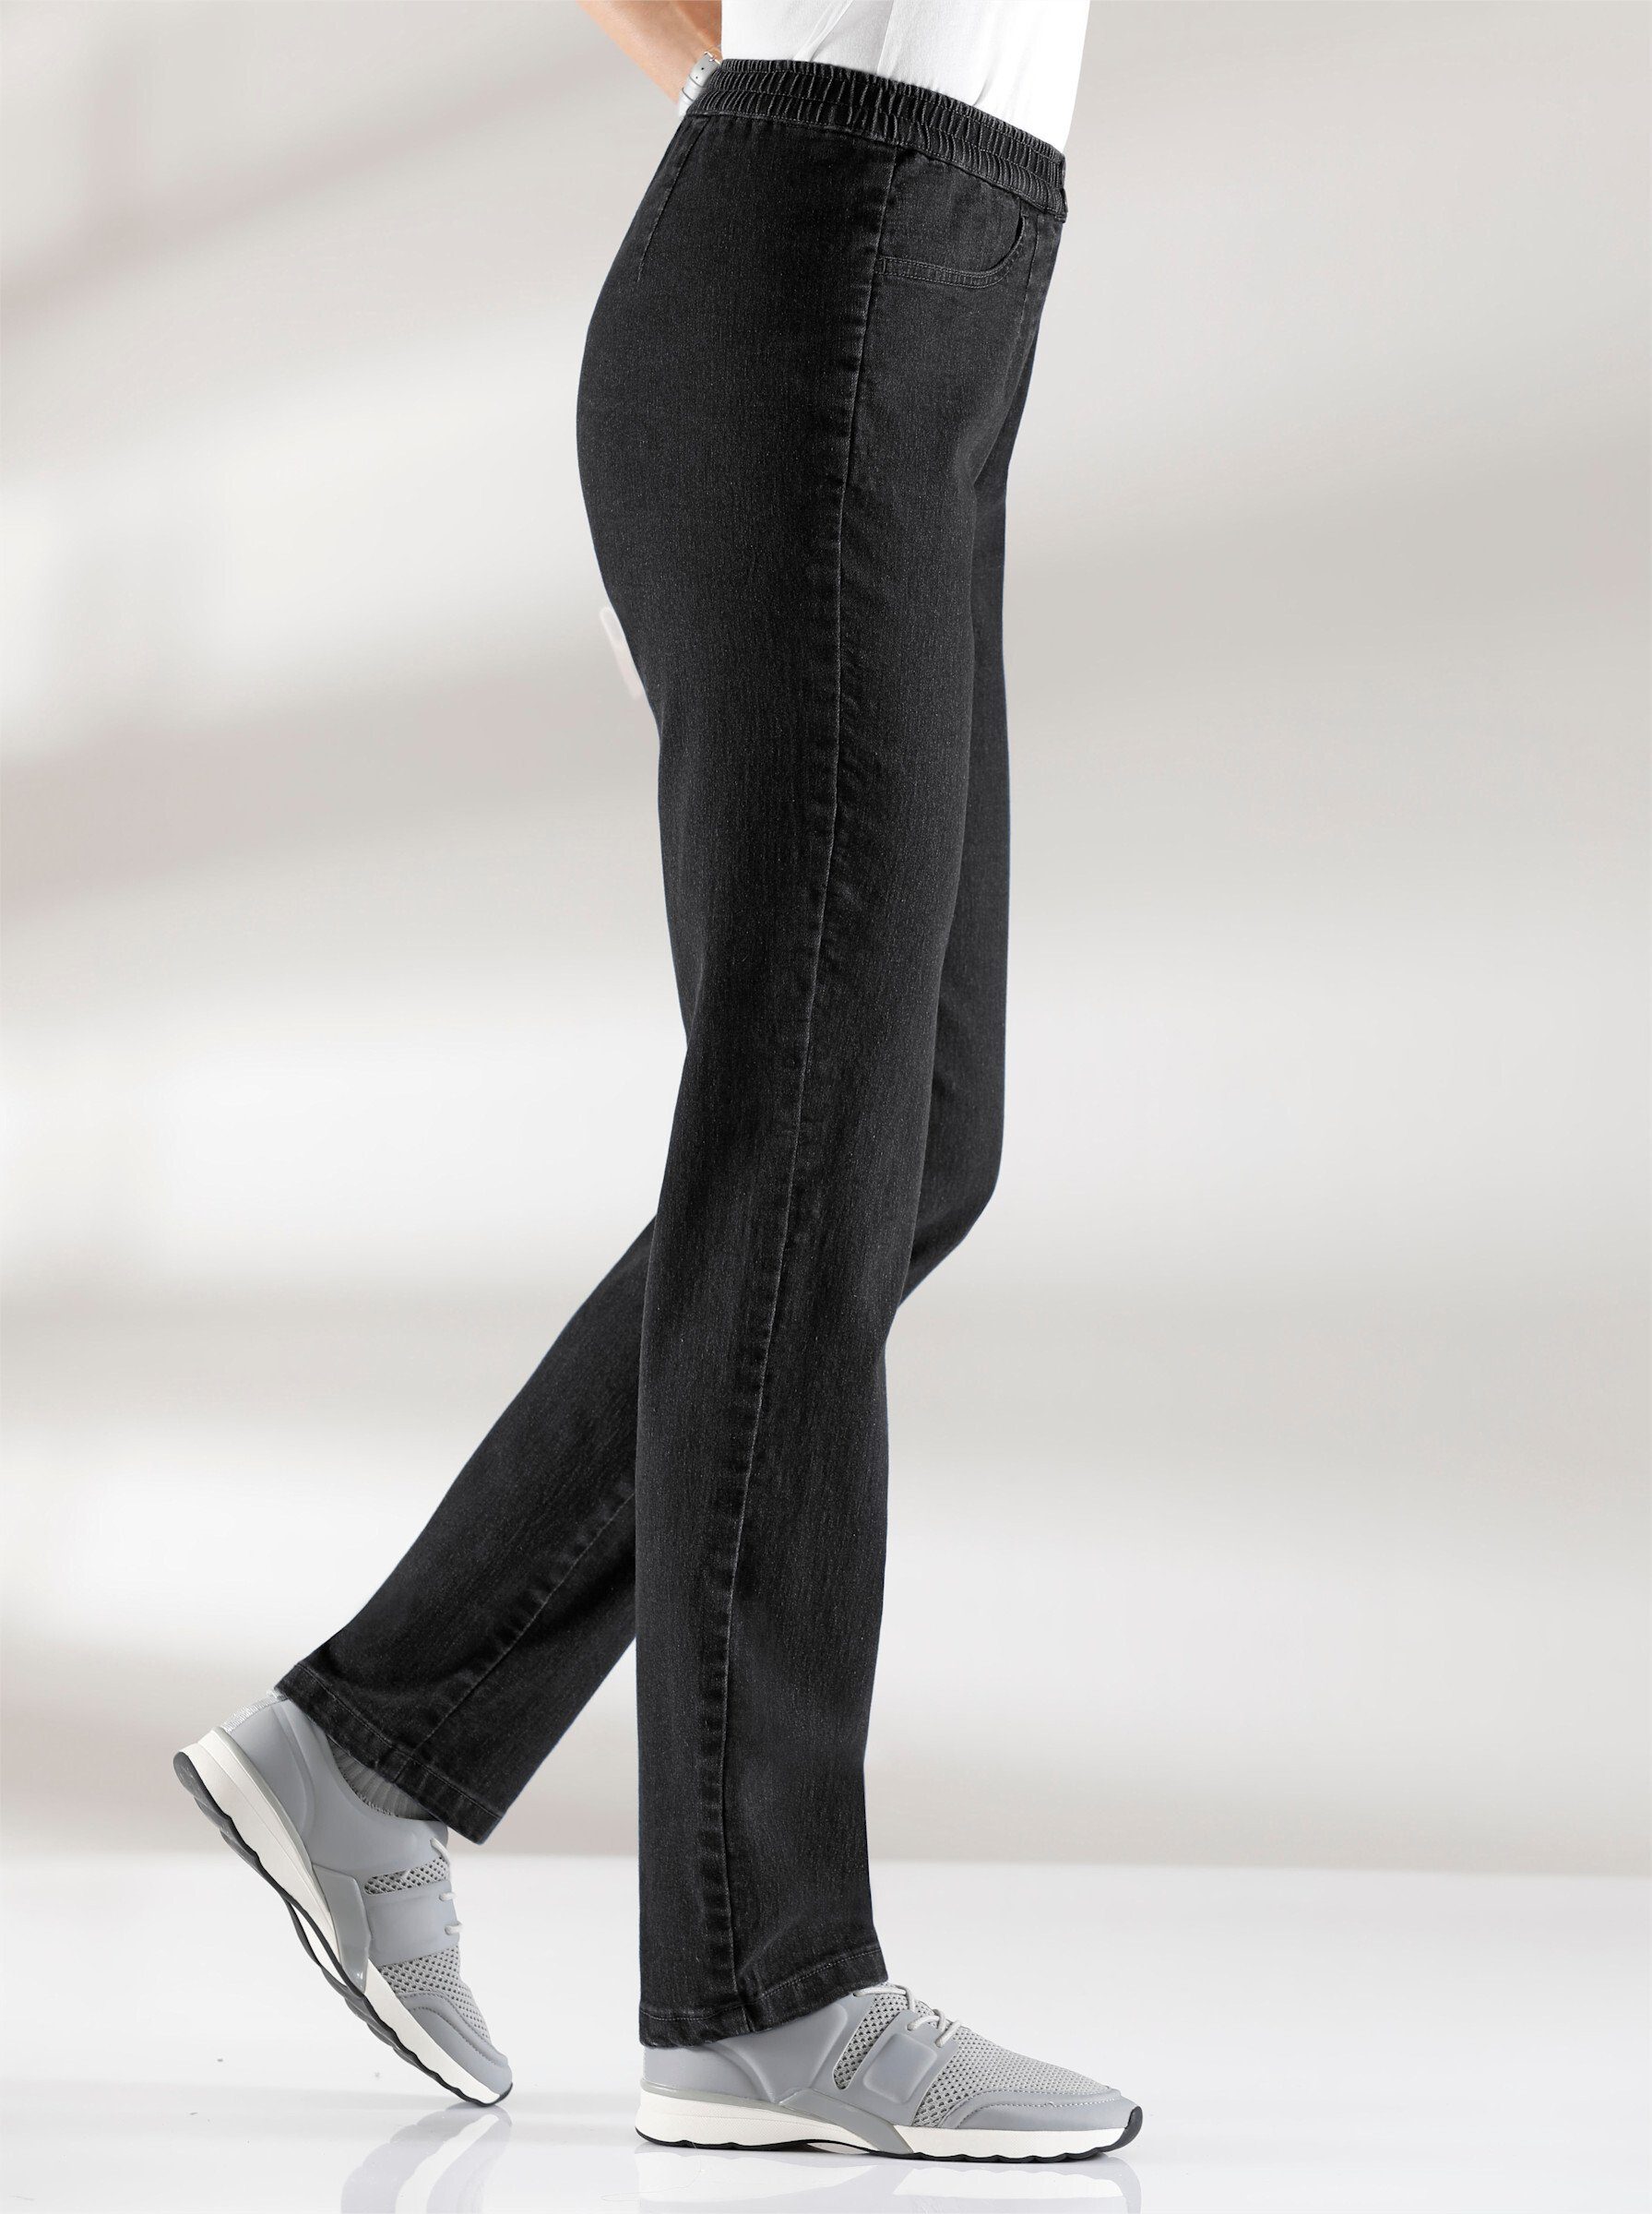 Sieh Jeans black-denim an! Bequeme